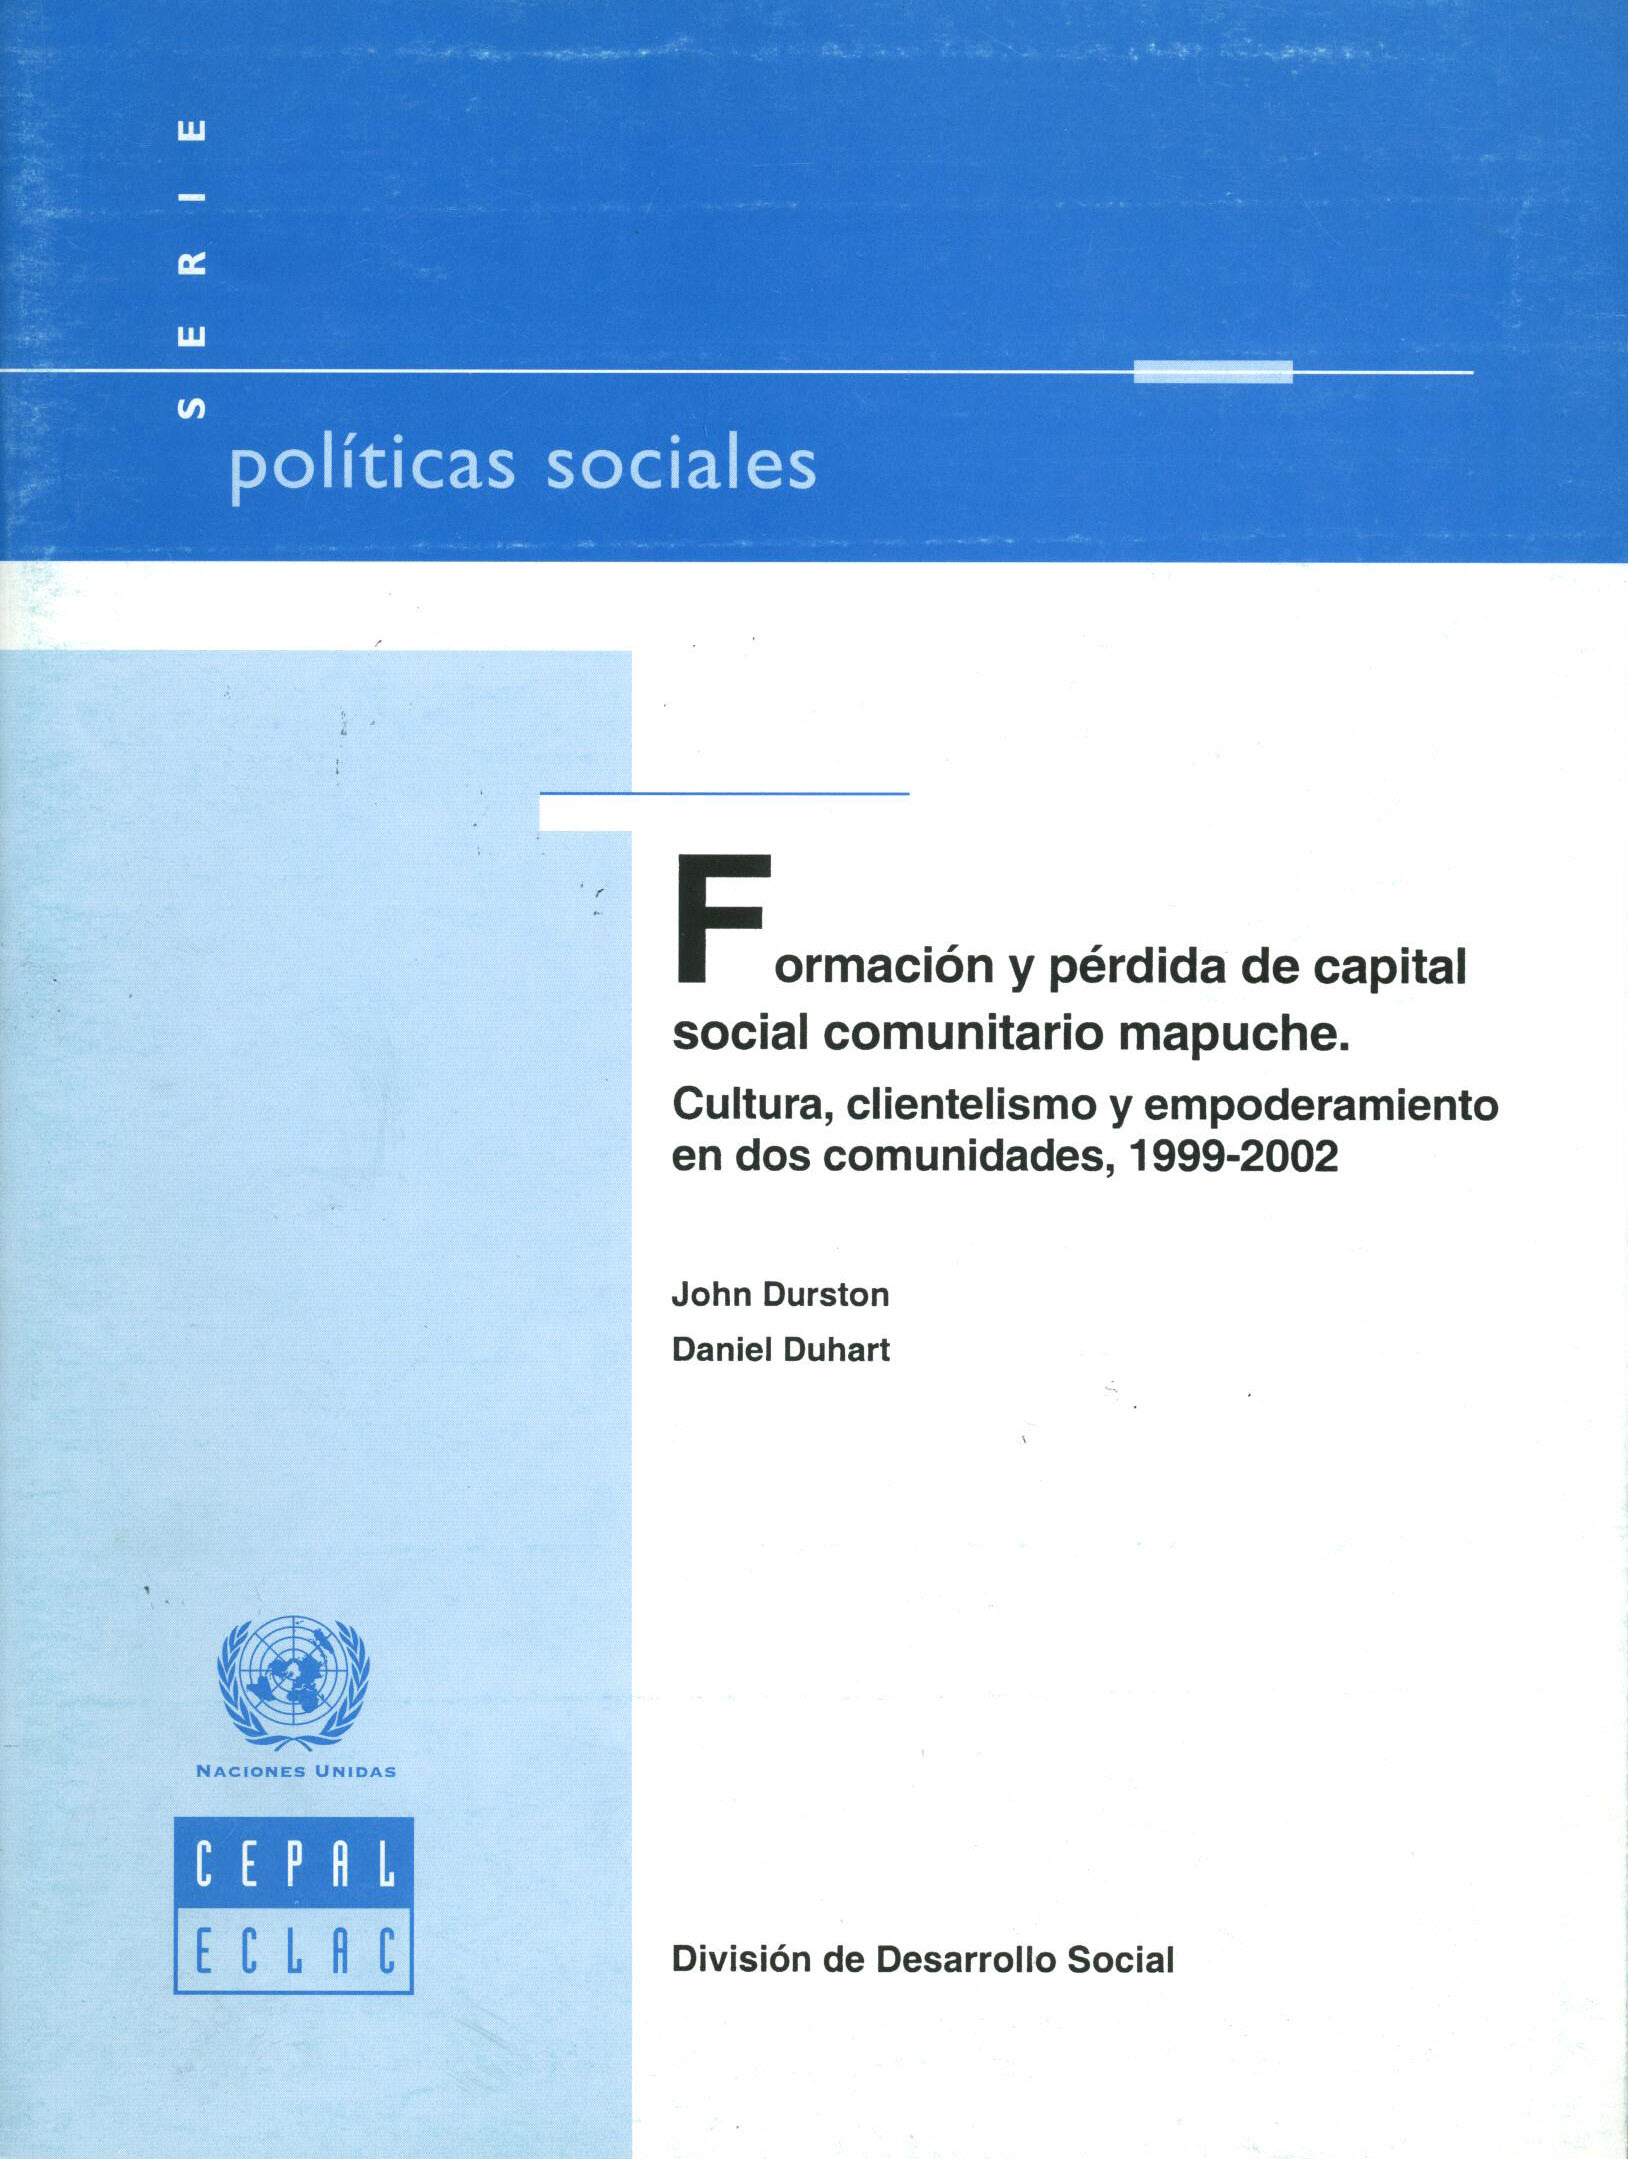 Formación y pérdida de capital social mapuche. Cultura, clientelismo y empoderamiento en dos comunidades, 1999-2002